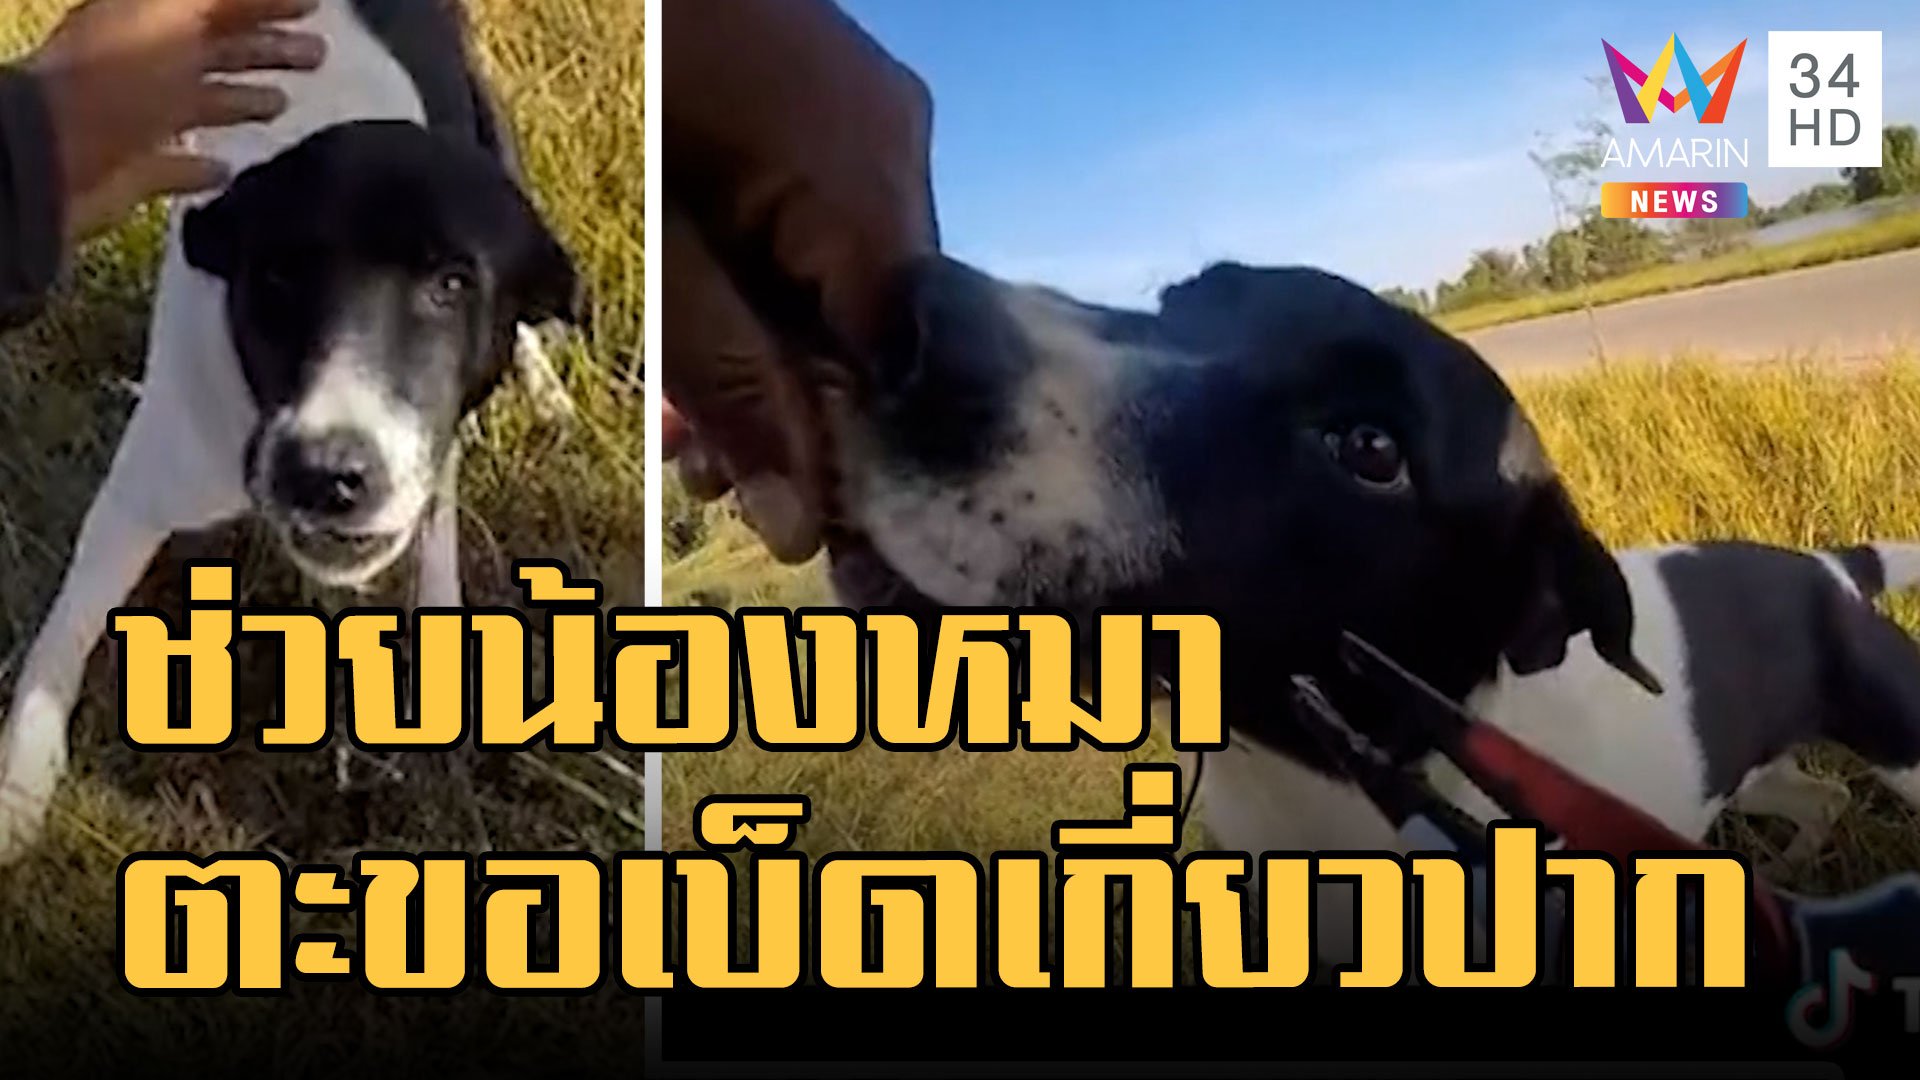 หนุ่มใจบุญ ช่วยหมาโดนเบ็ดตกปลาเกี่ยวปาก | ข่าวอรุณอมรินทร์ | 9 ม.ค. 66 | AMARIN TVHD34